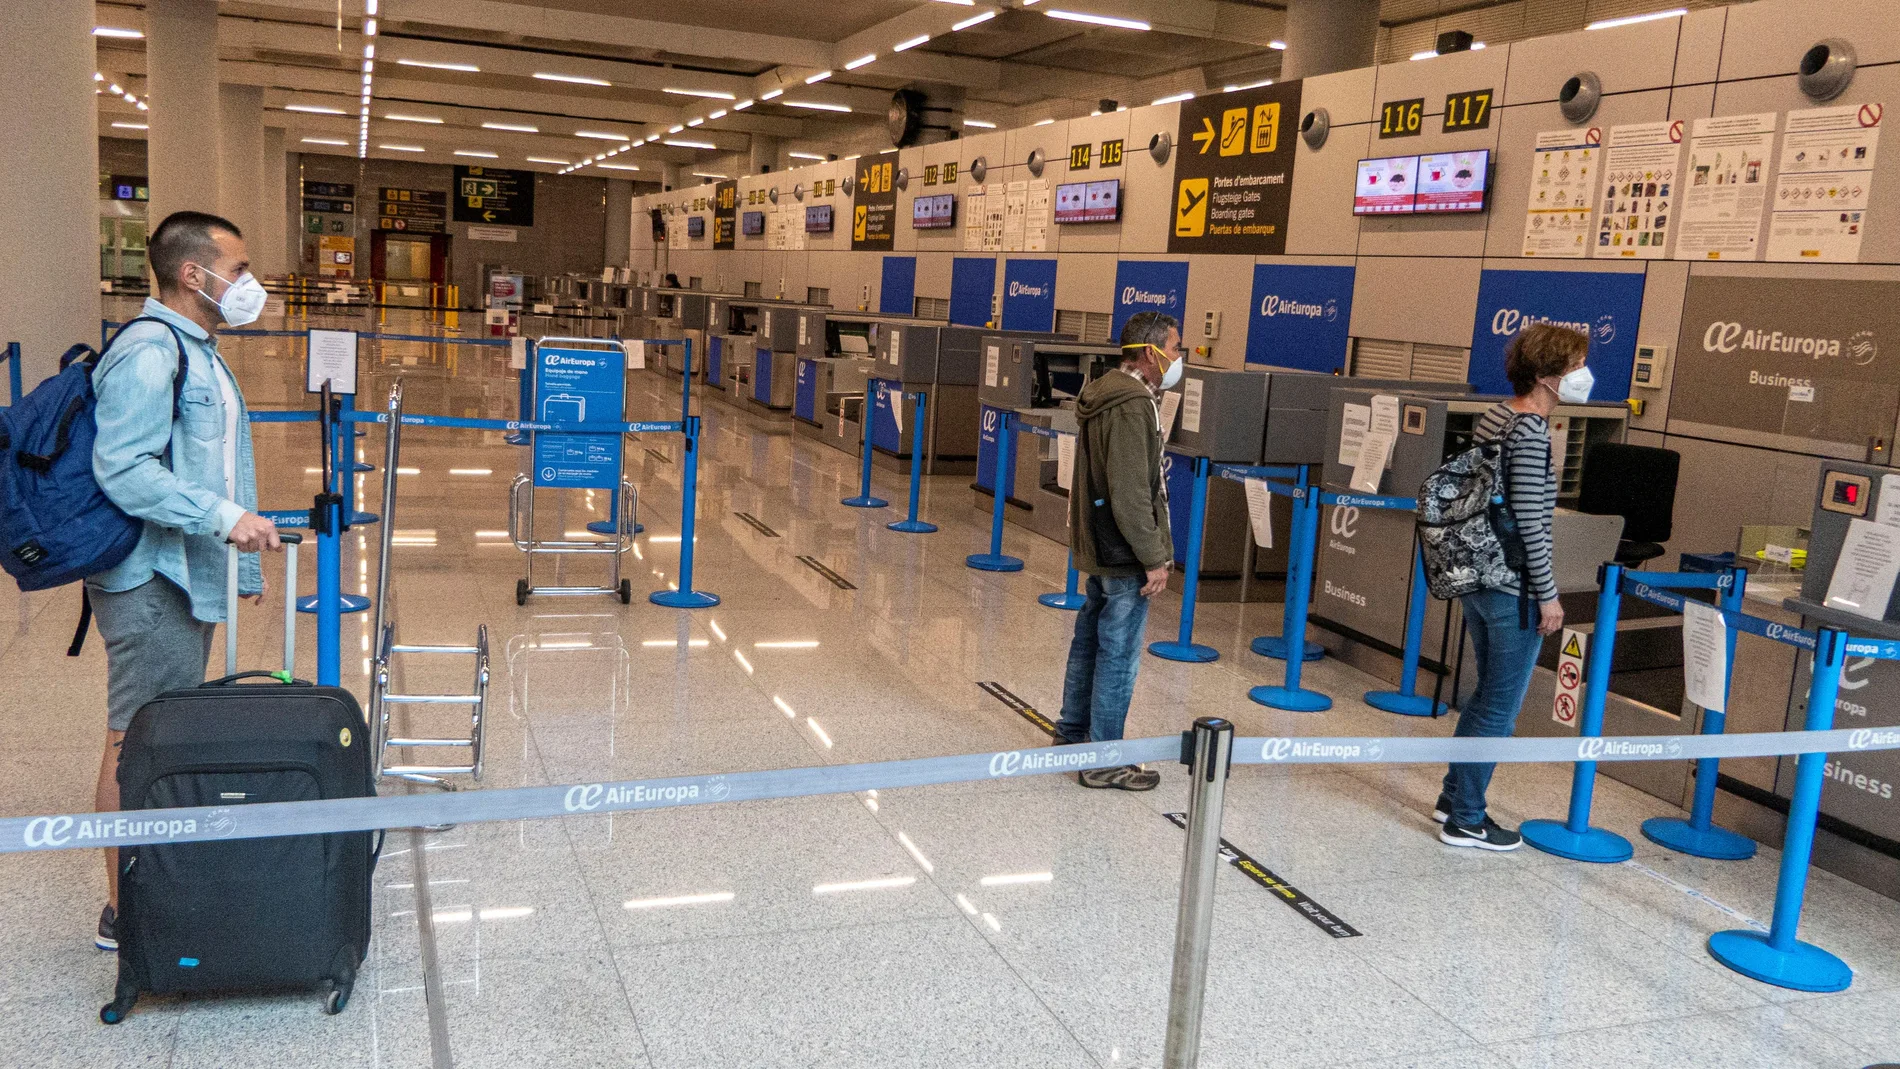 Dos pasajeros devuelto a Alemania y 7 denunciados por no justificar su viaje